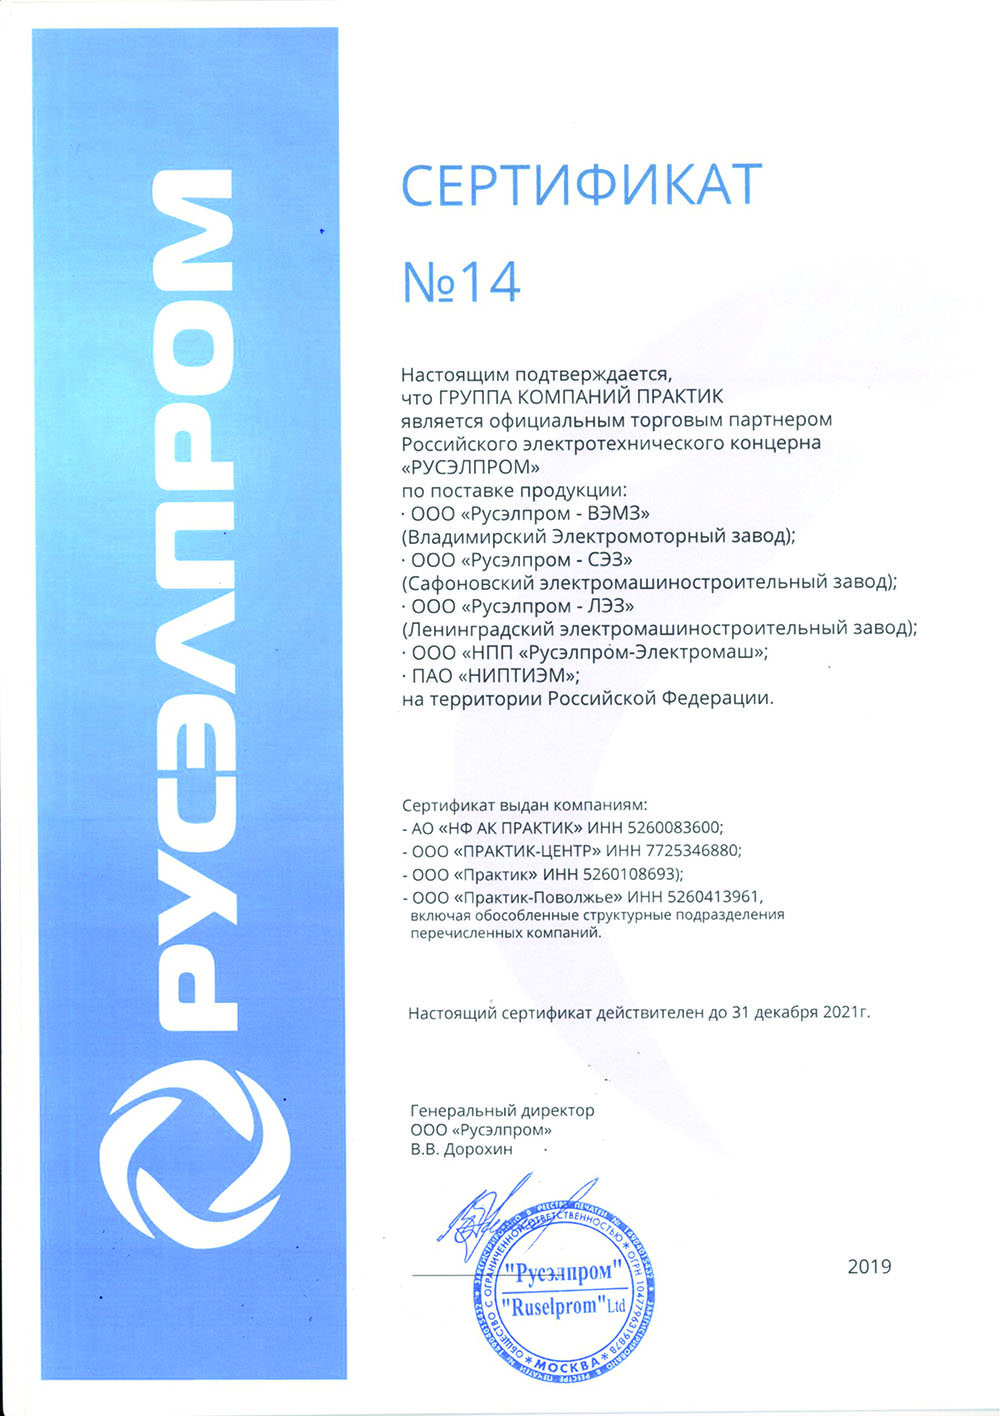 Сертификат официального партнера  ООО "Русэлпром"